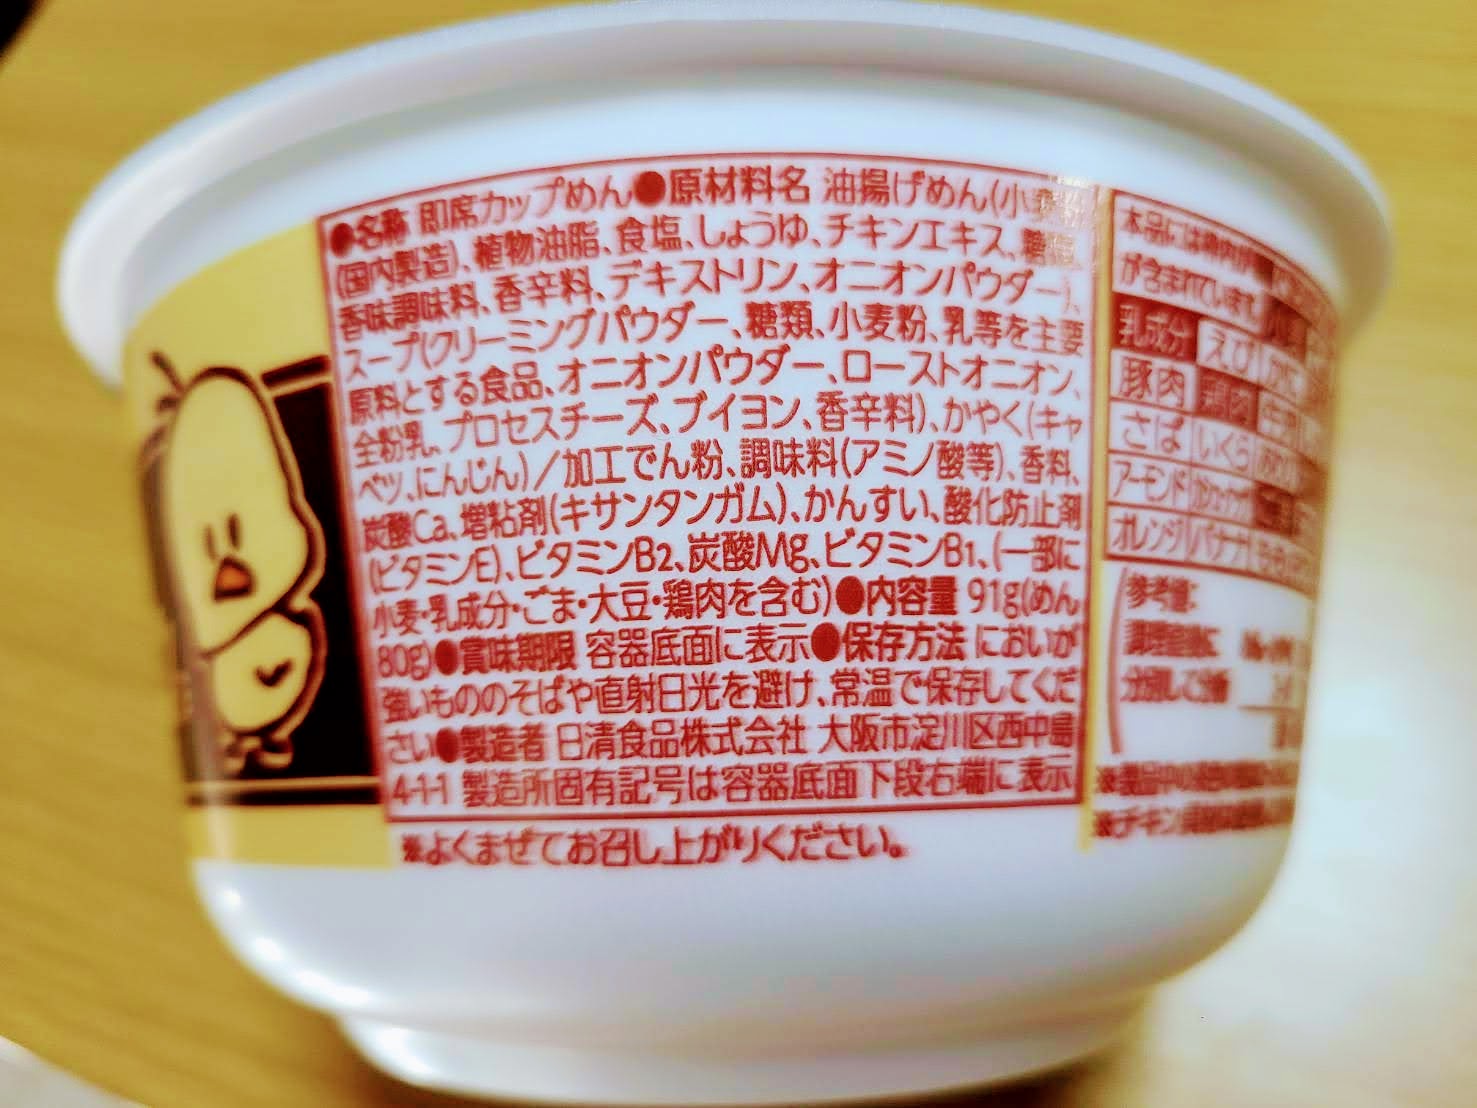 チキンラーメンどんぶり 昭和の洋食ブーム クリーミーグラタン味の食品表示